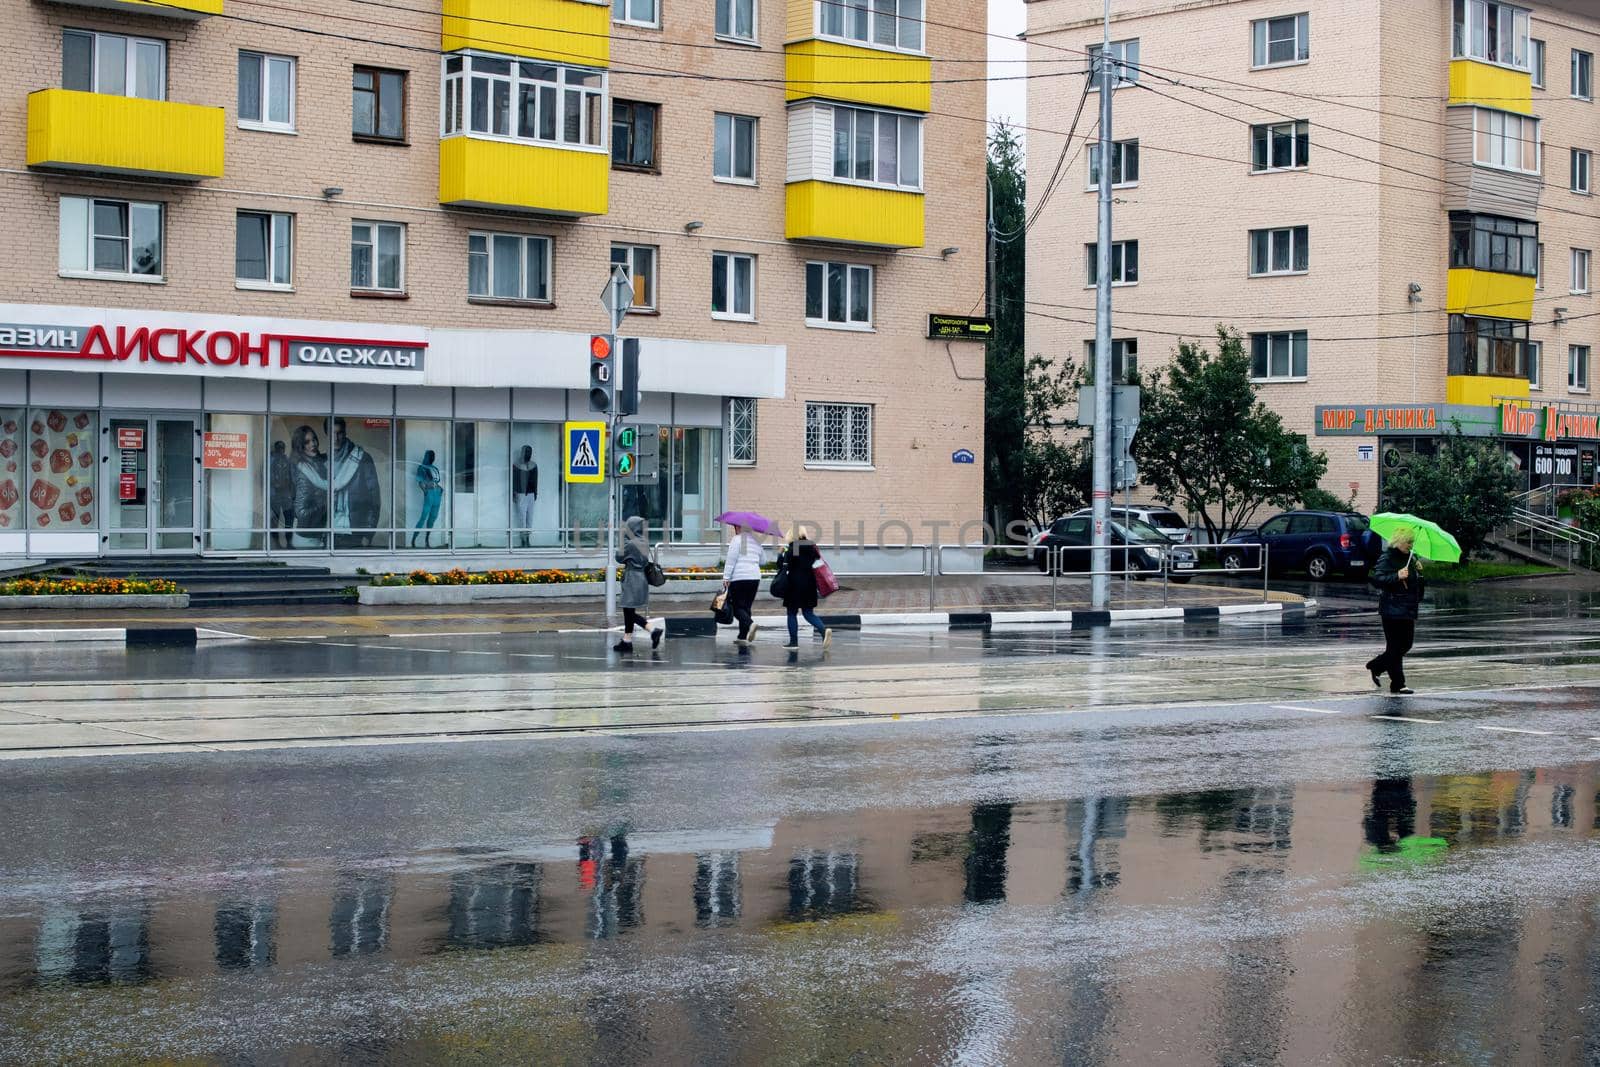 BELARUS, VITEBSK - SEPTEMBER 10, 2020: People at the crosswalk in the rain